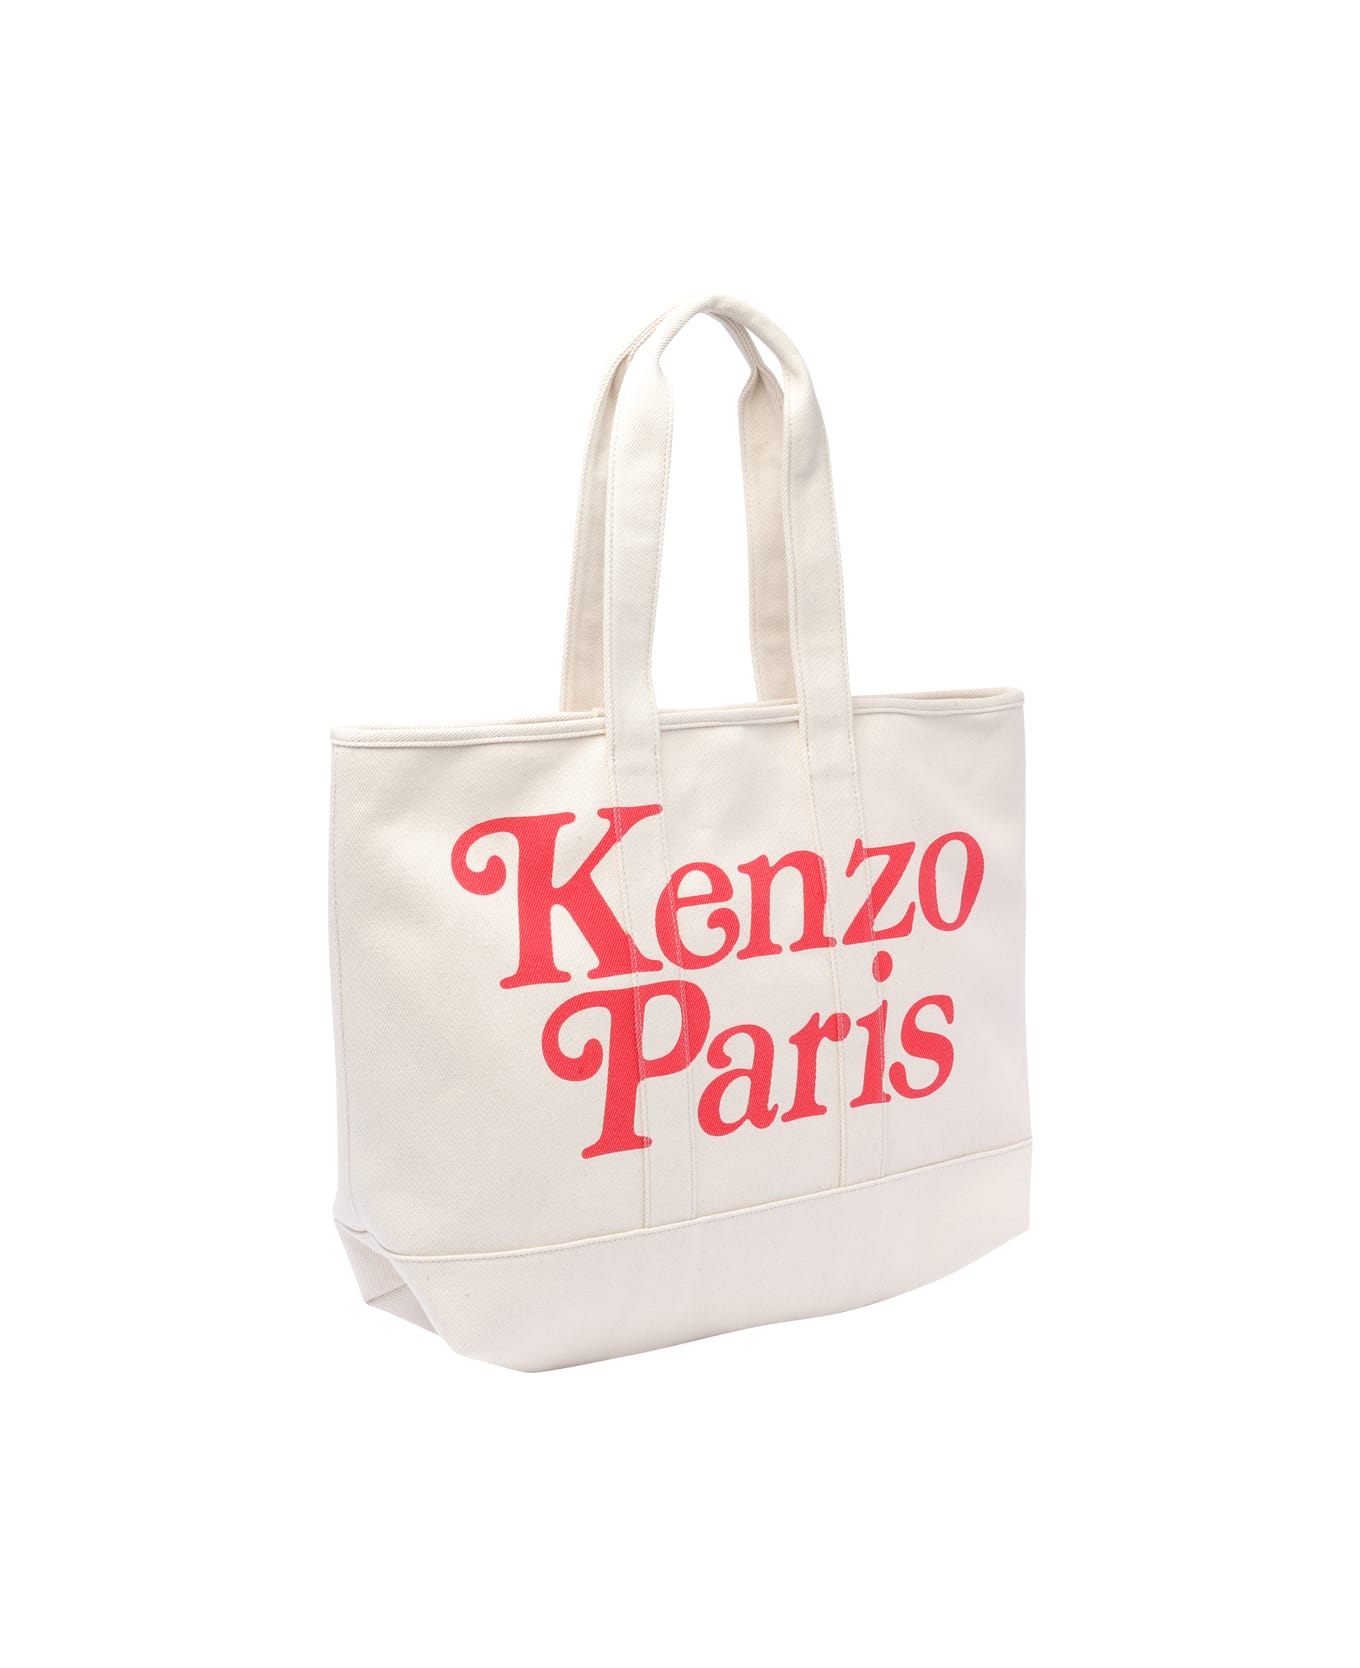 Kenzo Paris Tote Bag - Beige